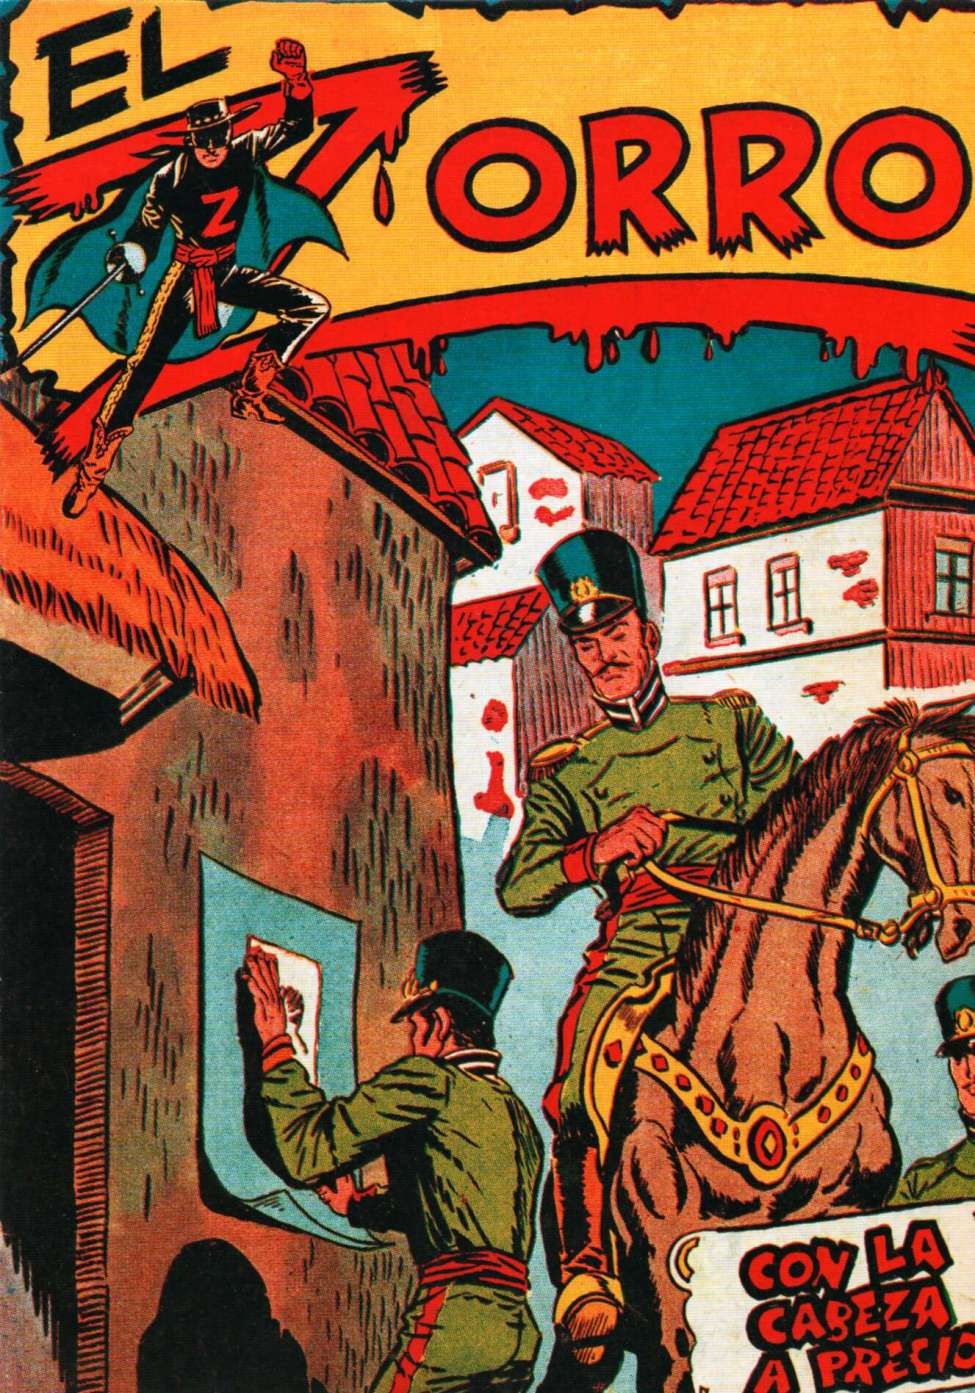 Book Cover For El Zorro 3 - Con La Cabeza a Precio